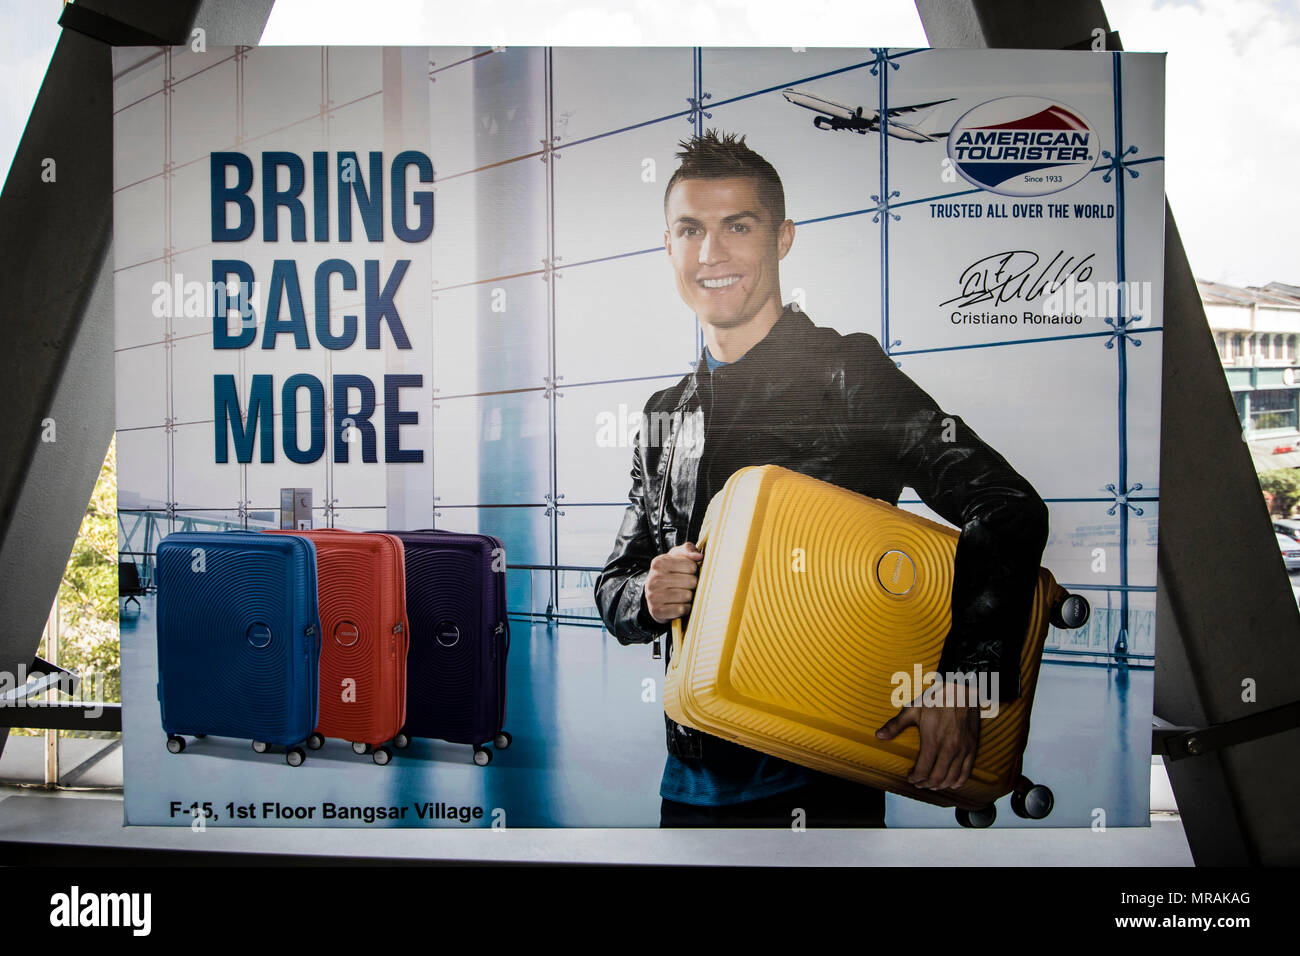 Kuala Lumpur, Malasia. El 26 de mayo, 2018. El famoso futbolista Cristiano Ronaldo publicidad de Tourister bolsa de equipaje se muestre en una cartelera de interior en un centro comercial de